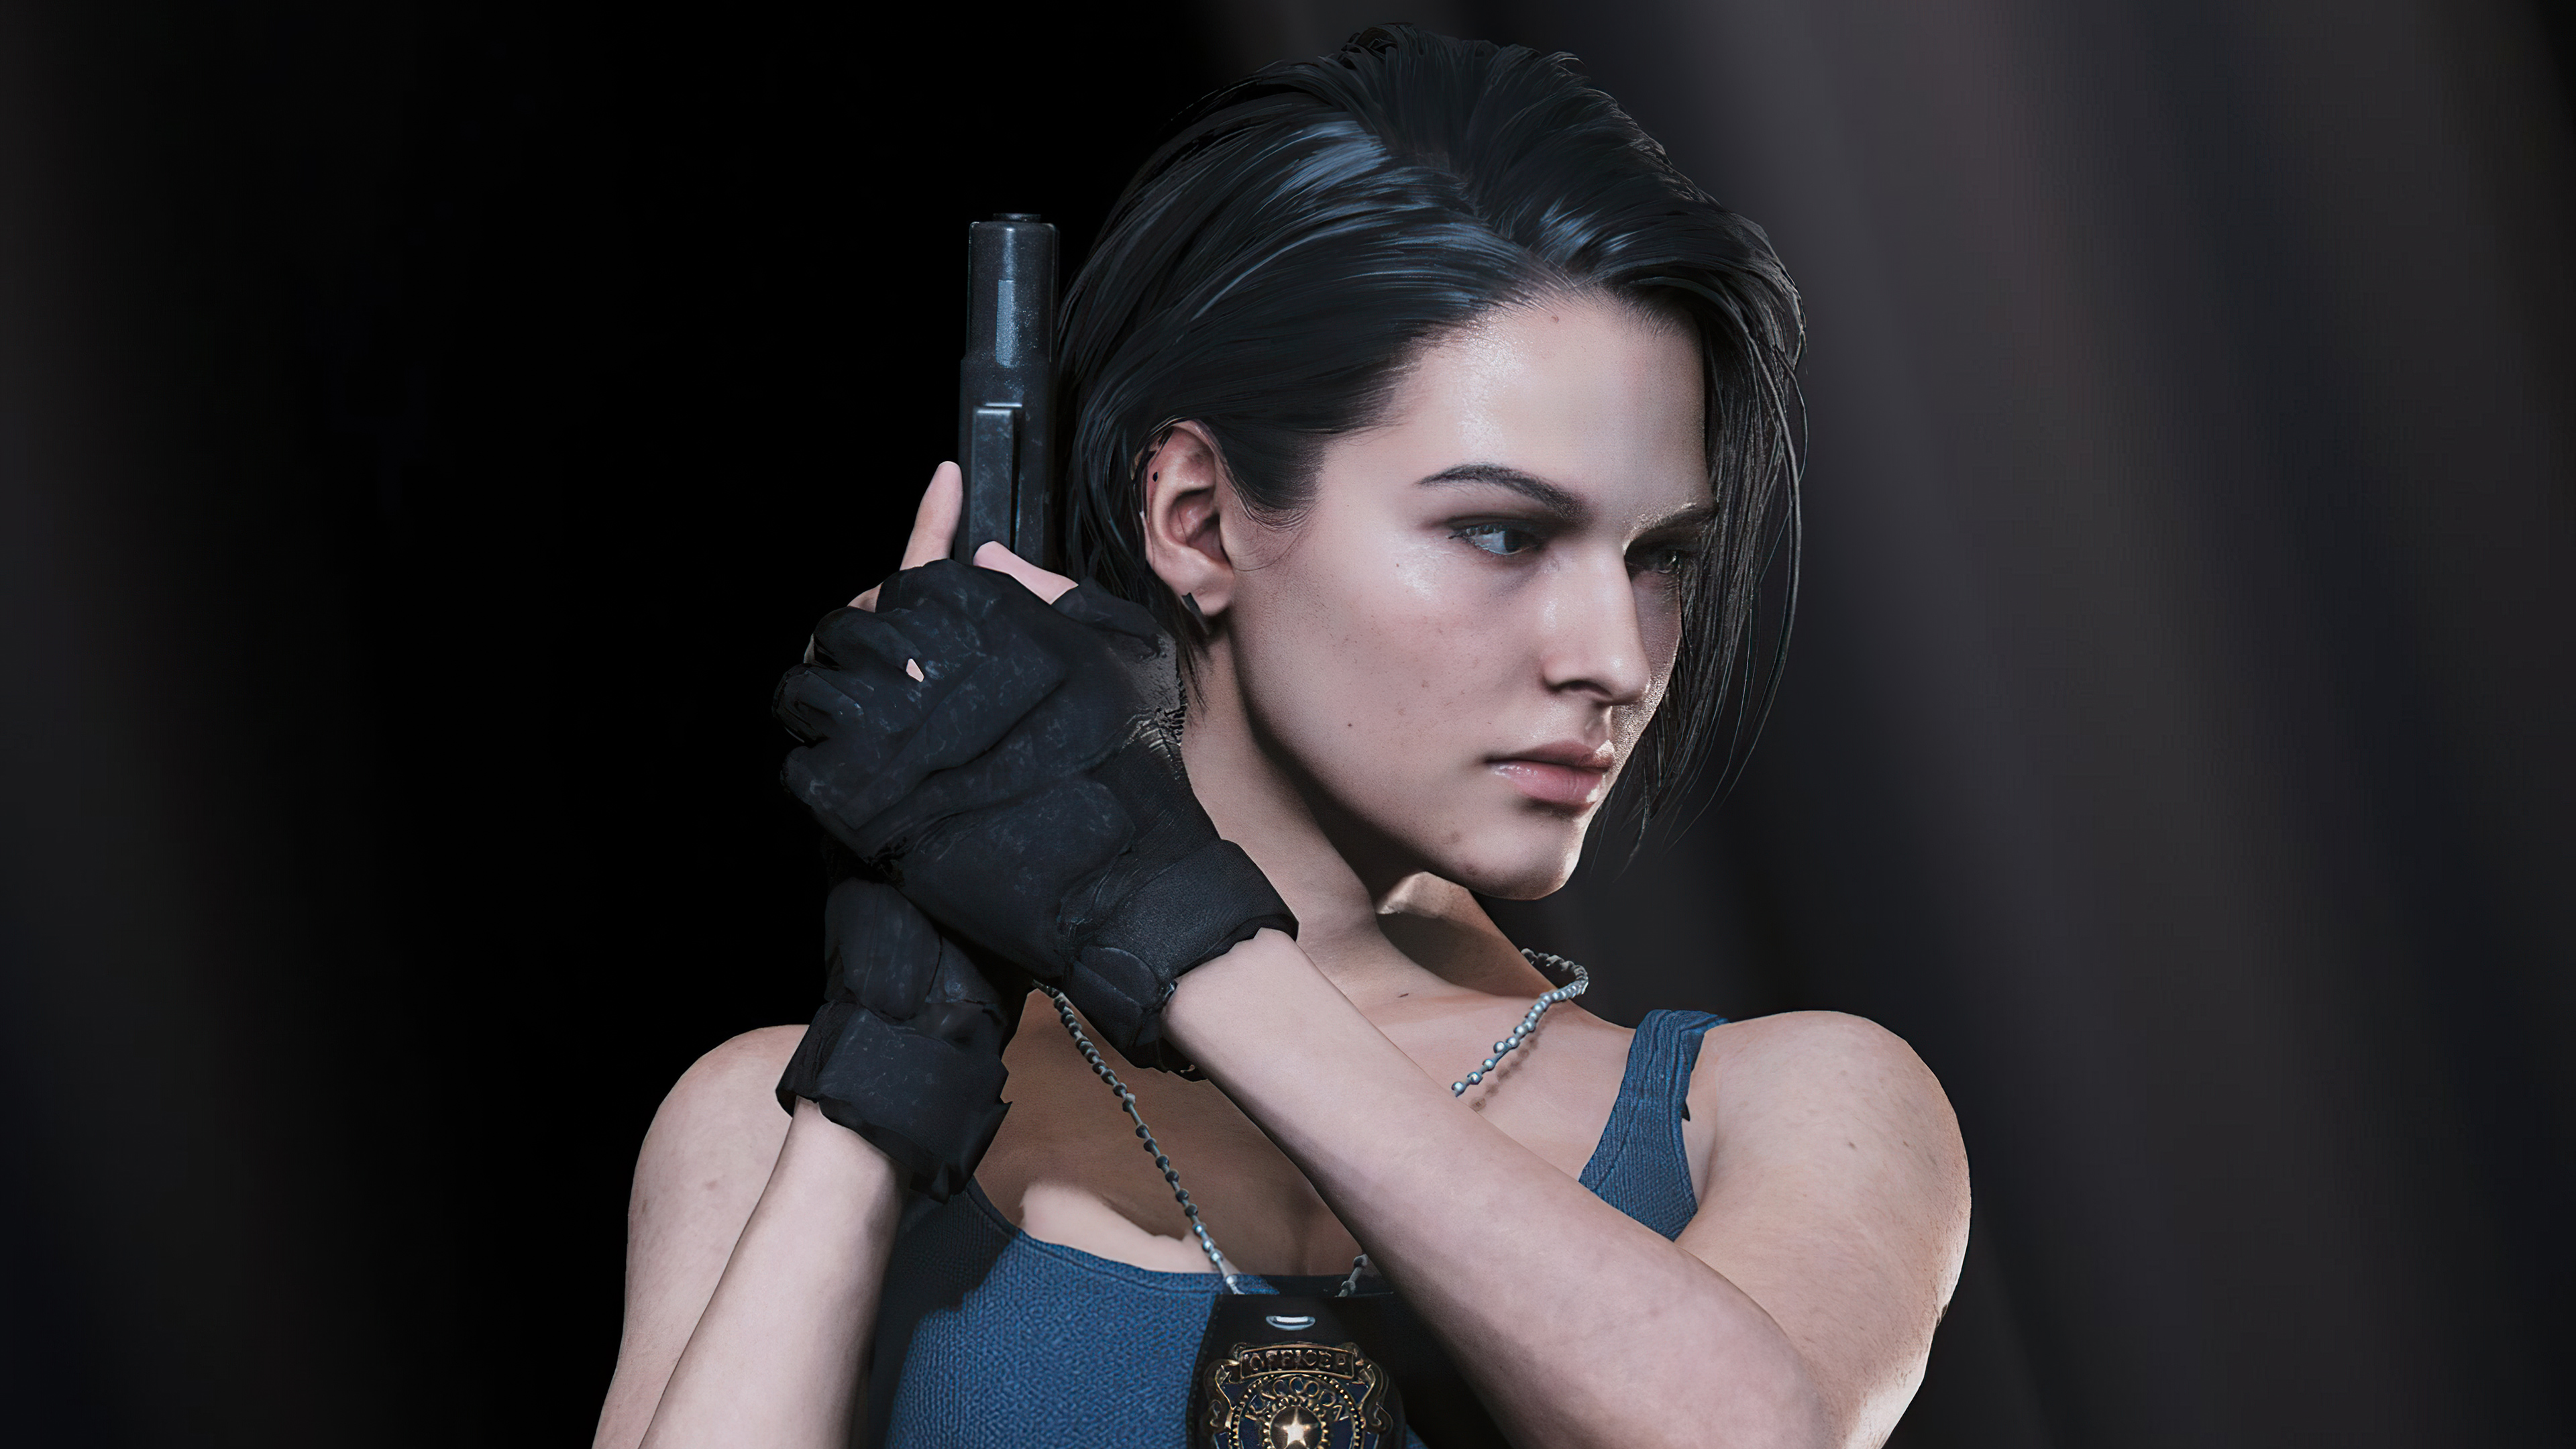 Jill Valentine Resident Evil 3 Remake 4K Wallpaper 71666